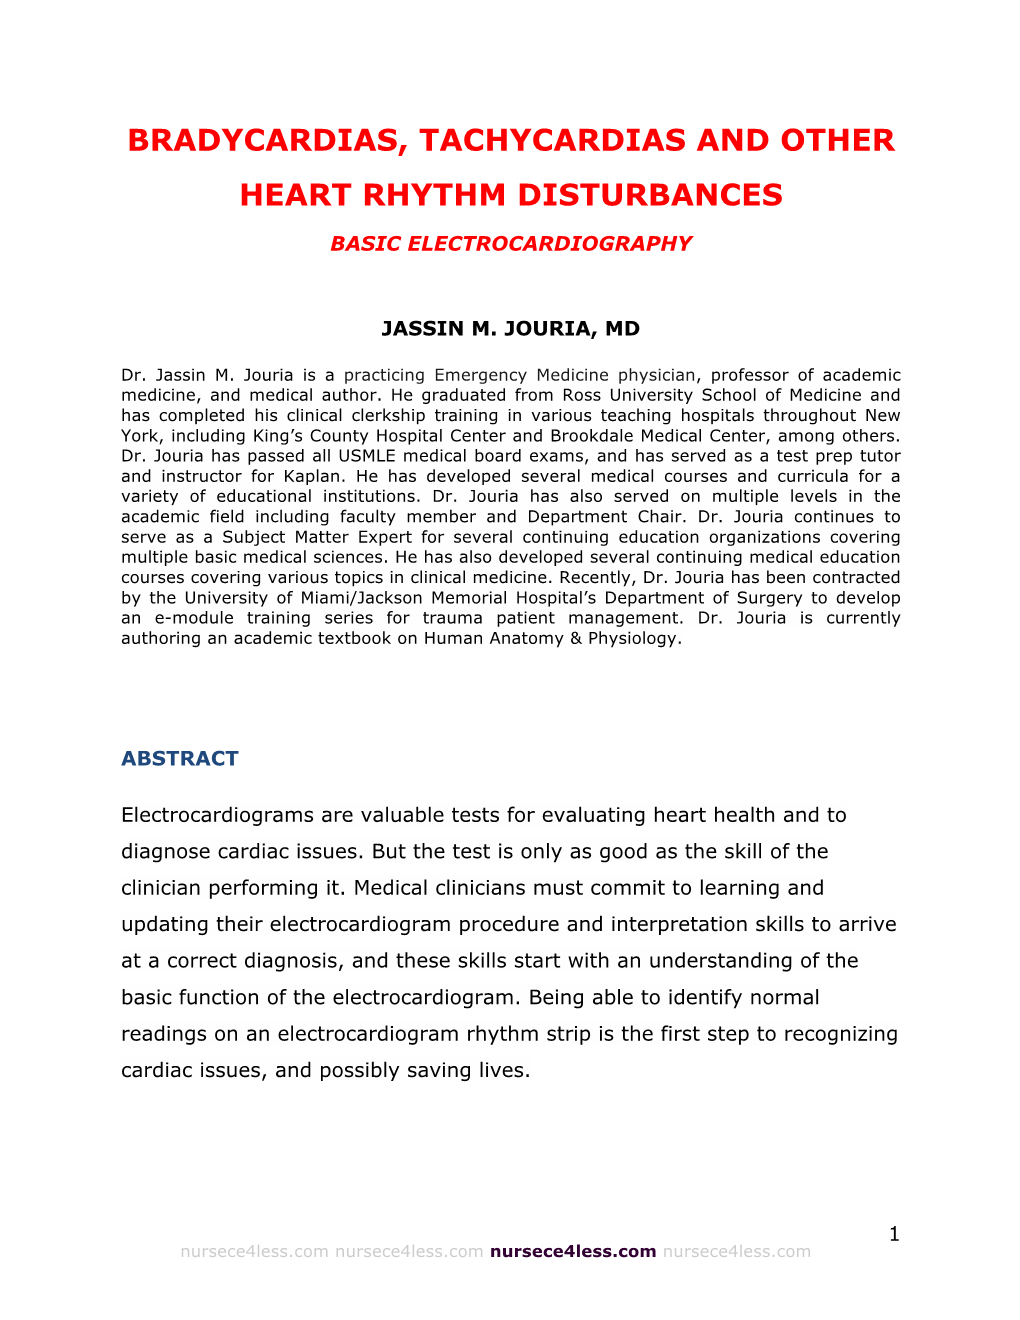 Bradycardias, Tachycardias and Other Heart Rhythm